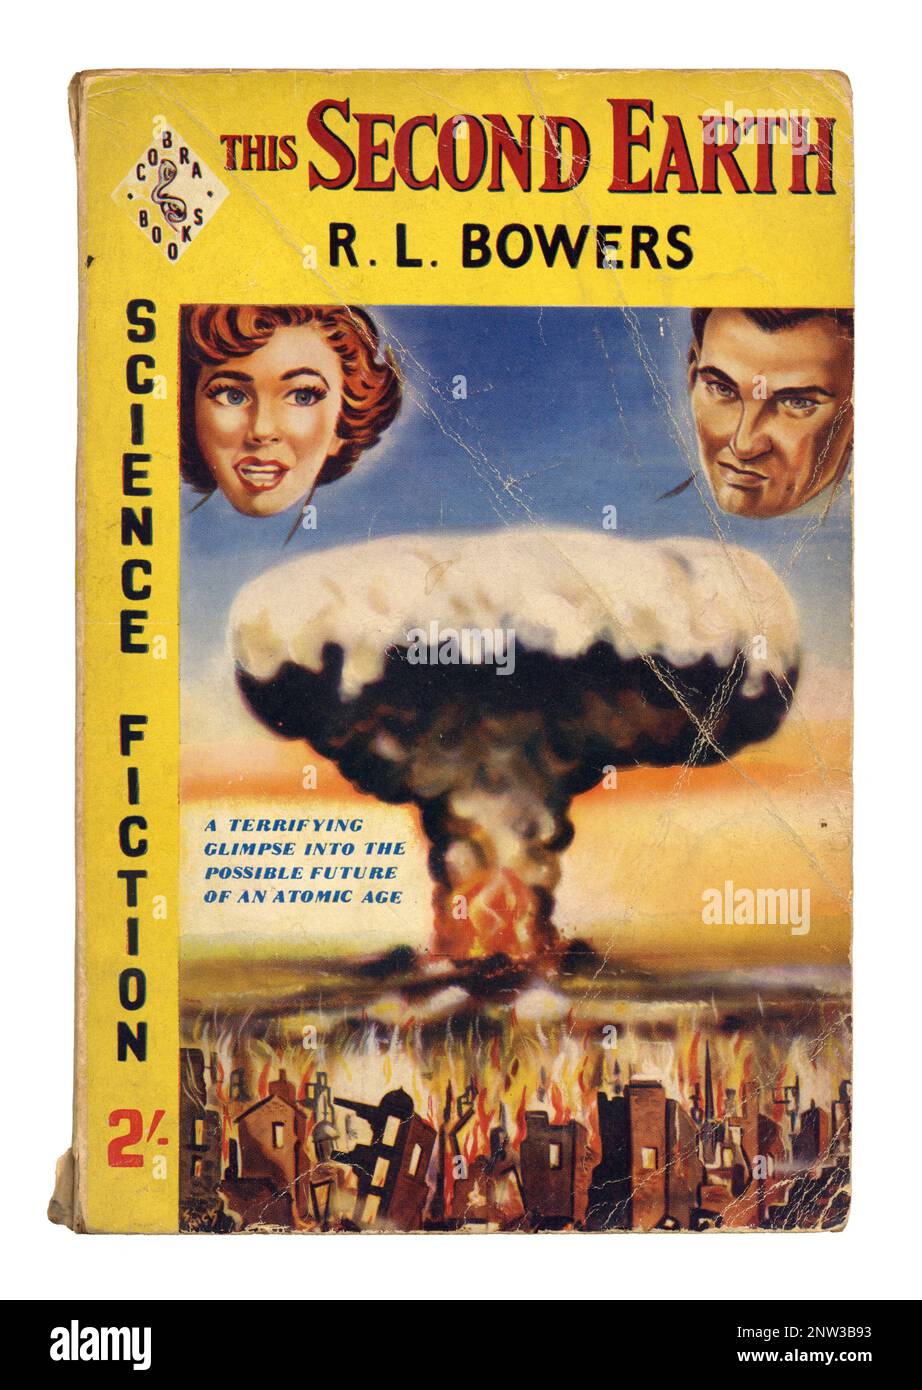 Couverture de livre de poche de science-fiction vintage, R. L. Bowers, This second Earth, 1957 Banque D'Images